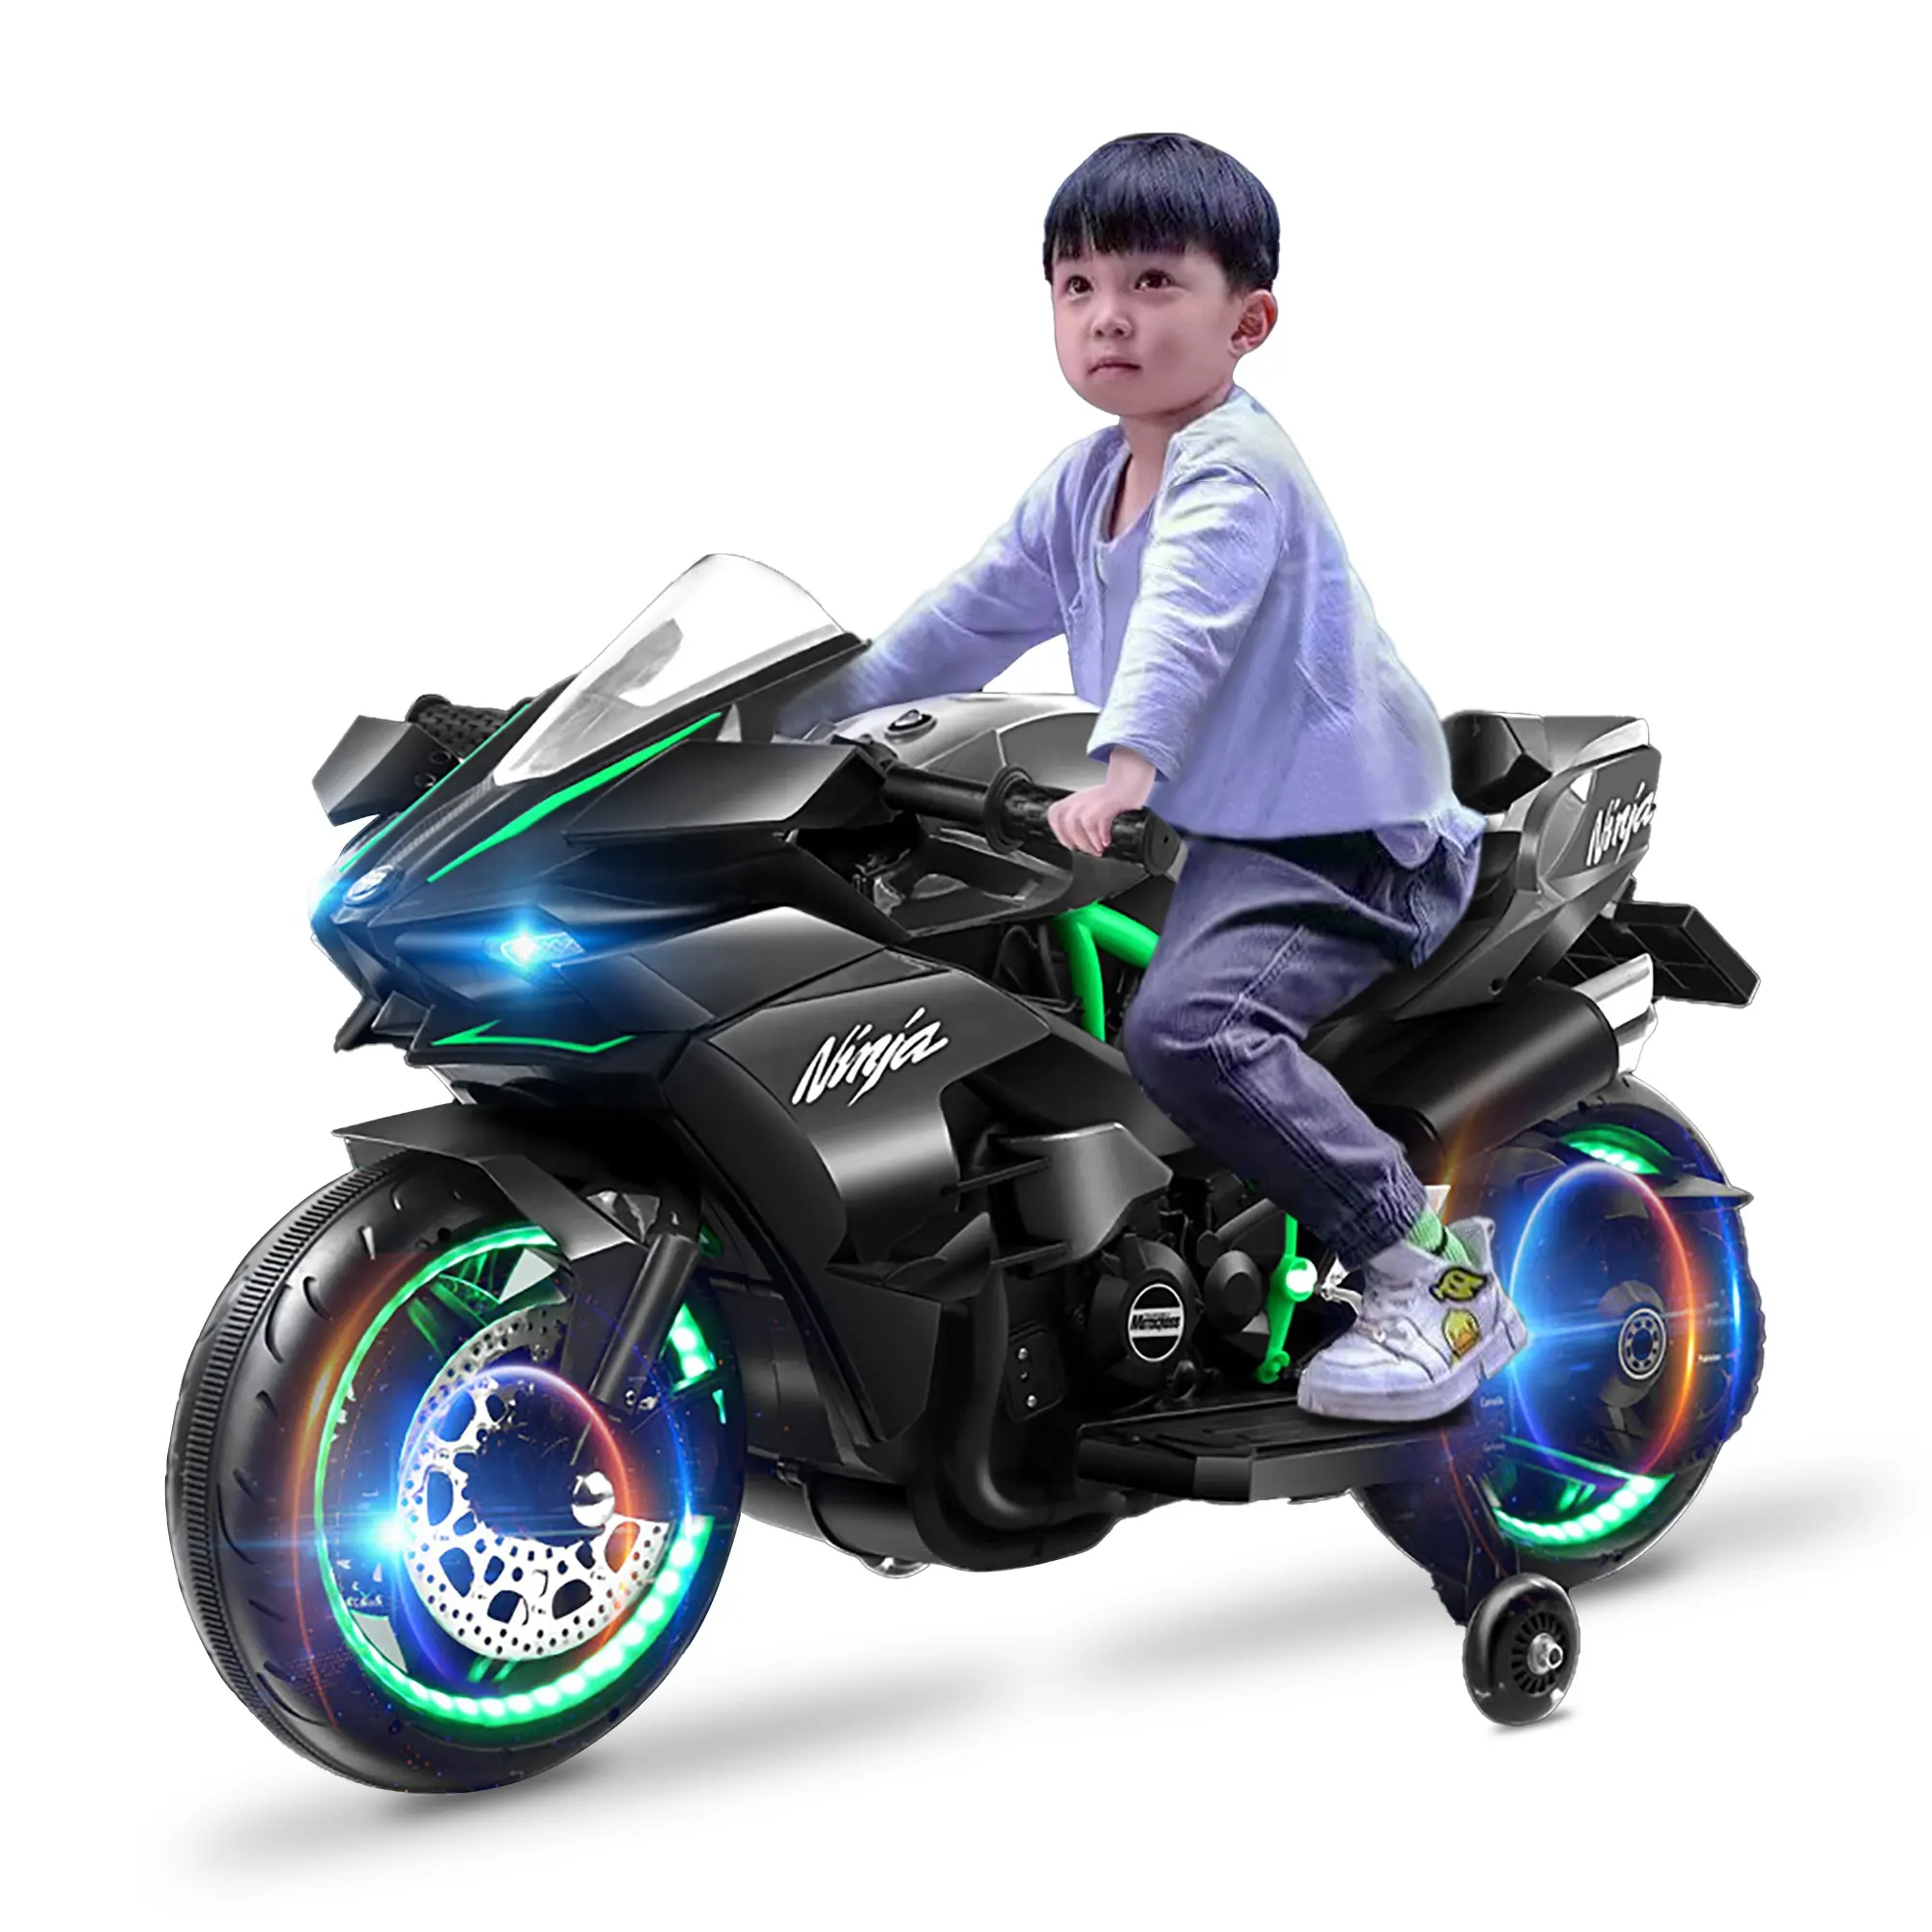 Coches de paseo para niños juguetes motocicleta juguetes de aprendizaje Kawasakis H2R 12V/4.5A batería deporte motocicleta 380W motor acelerador simulado